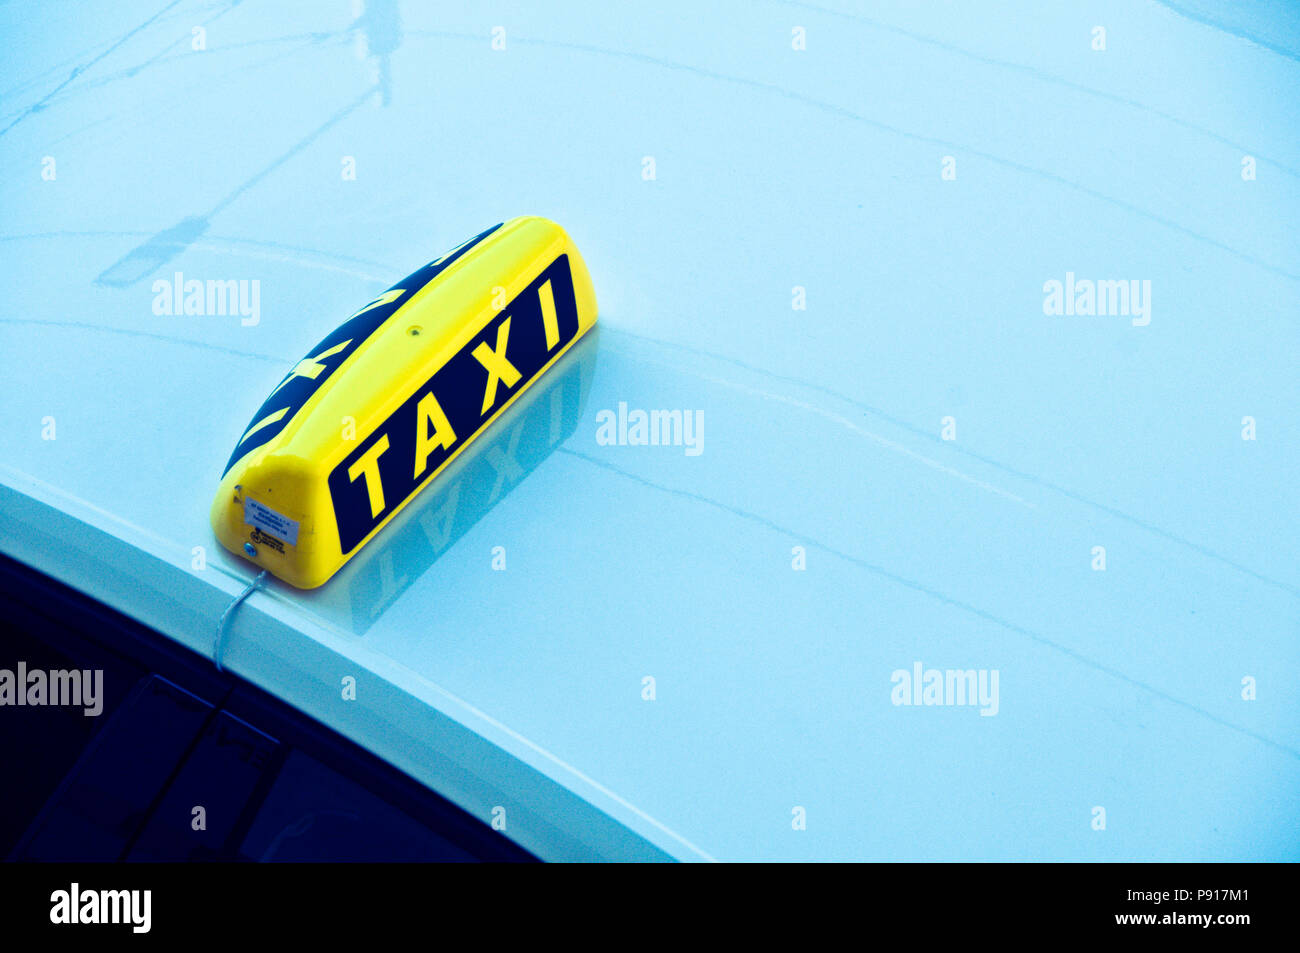 Gelbe taxi Schild auf dem Dach, ein blaues Auto Stockfotografie - Alamy